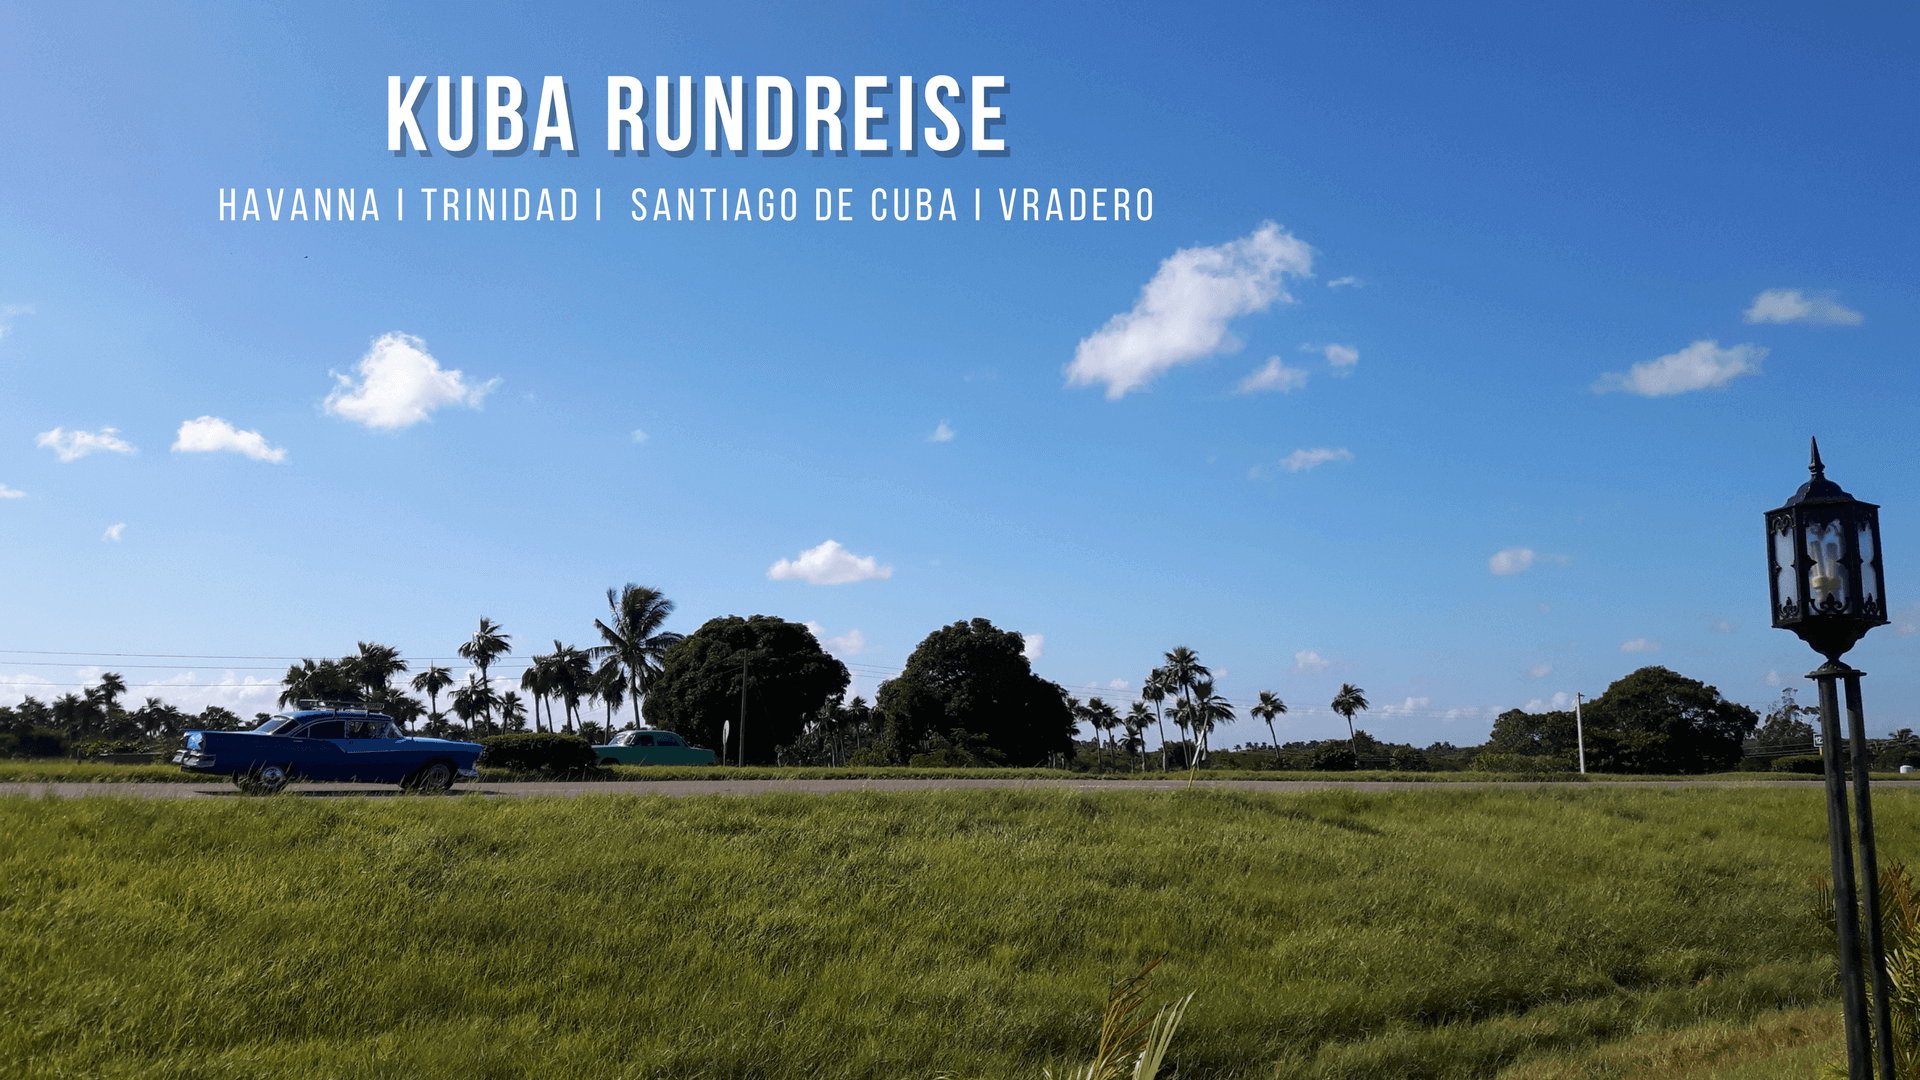 Kuba Rundreise günstig - Reisebericht & Tipps